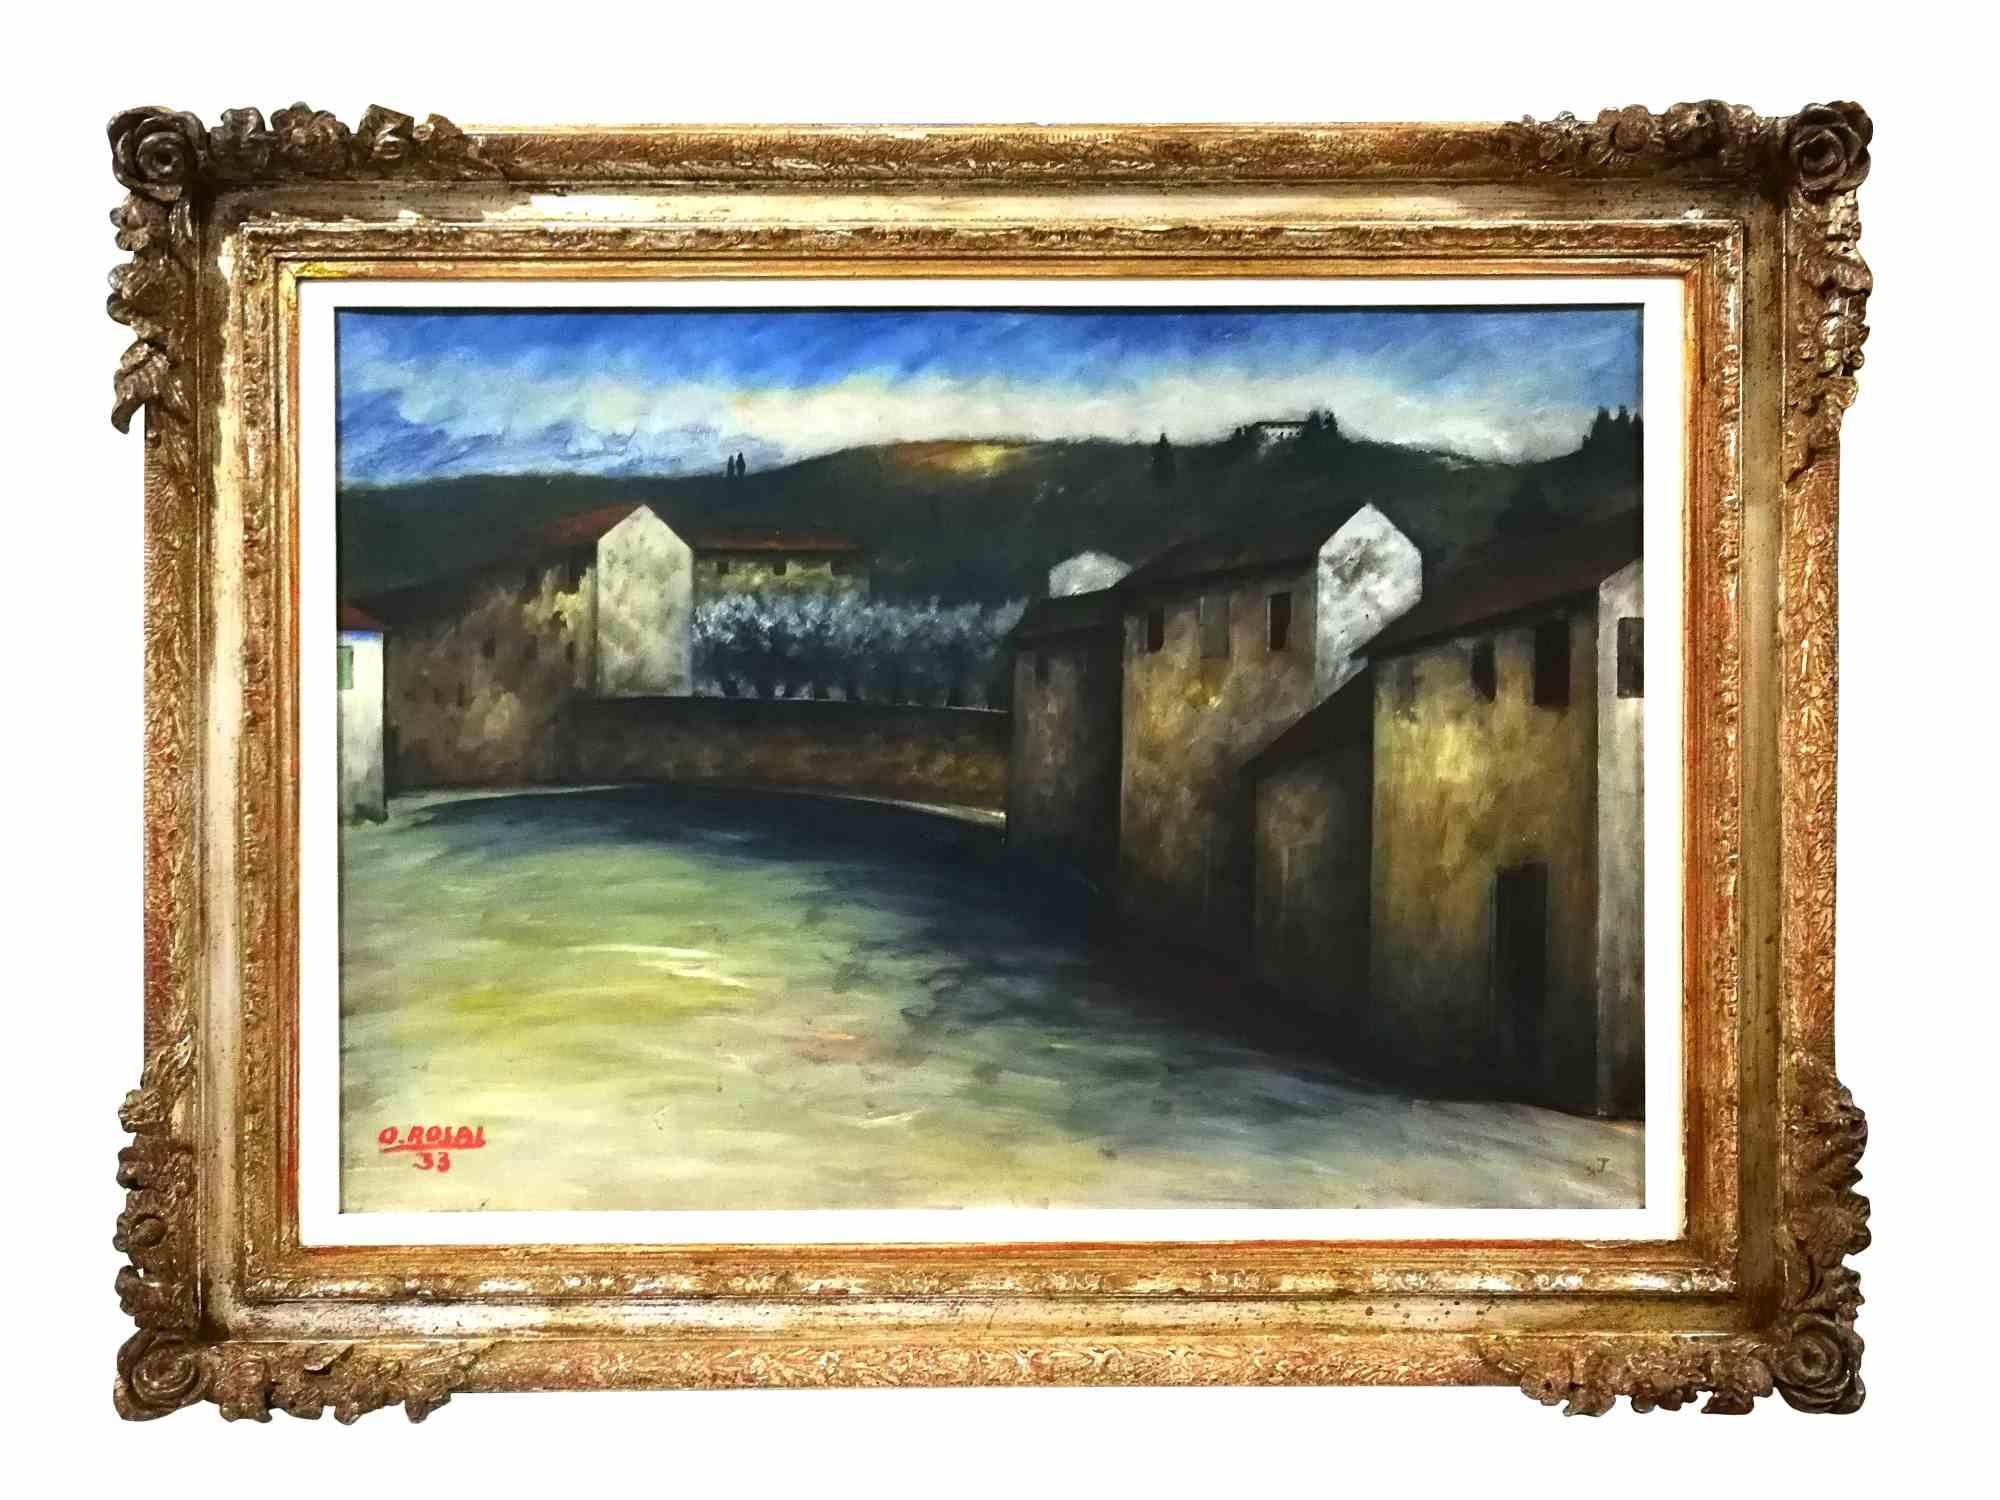 Paysage toscan est une peinture originale et exceptionnelle réalisée par l'artiste italien Ottone Rosai en 1933.

Huile sur carton.

Elle représente la campagne toscane, l'un des thèmes favoris de l'œuvre de Rosai.

Pour son atmosphère, ses tons